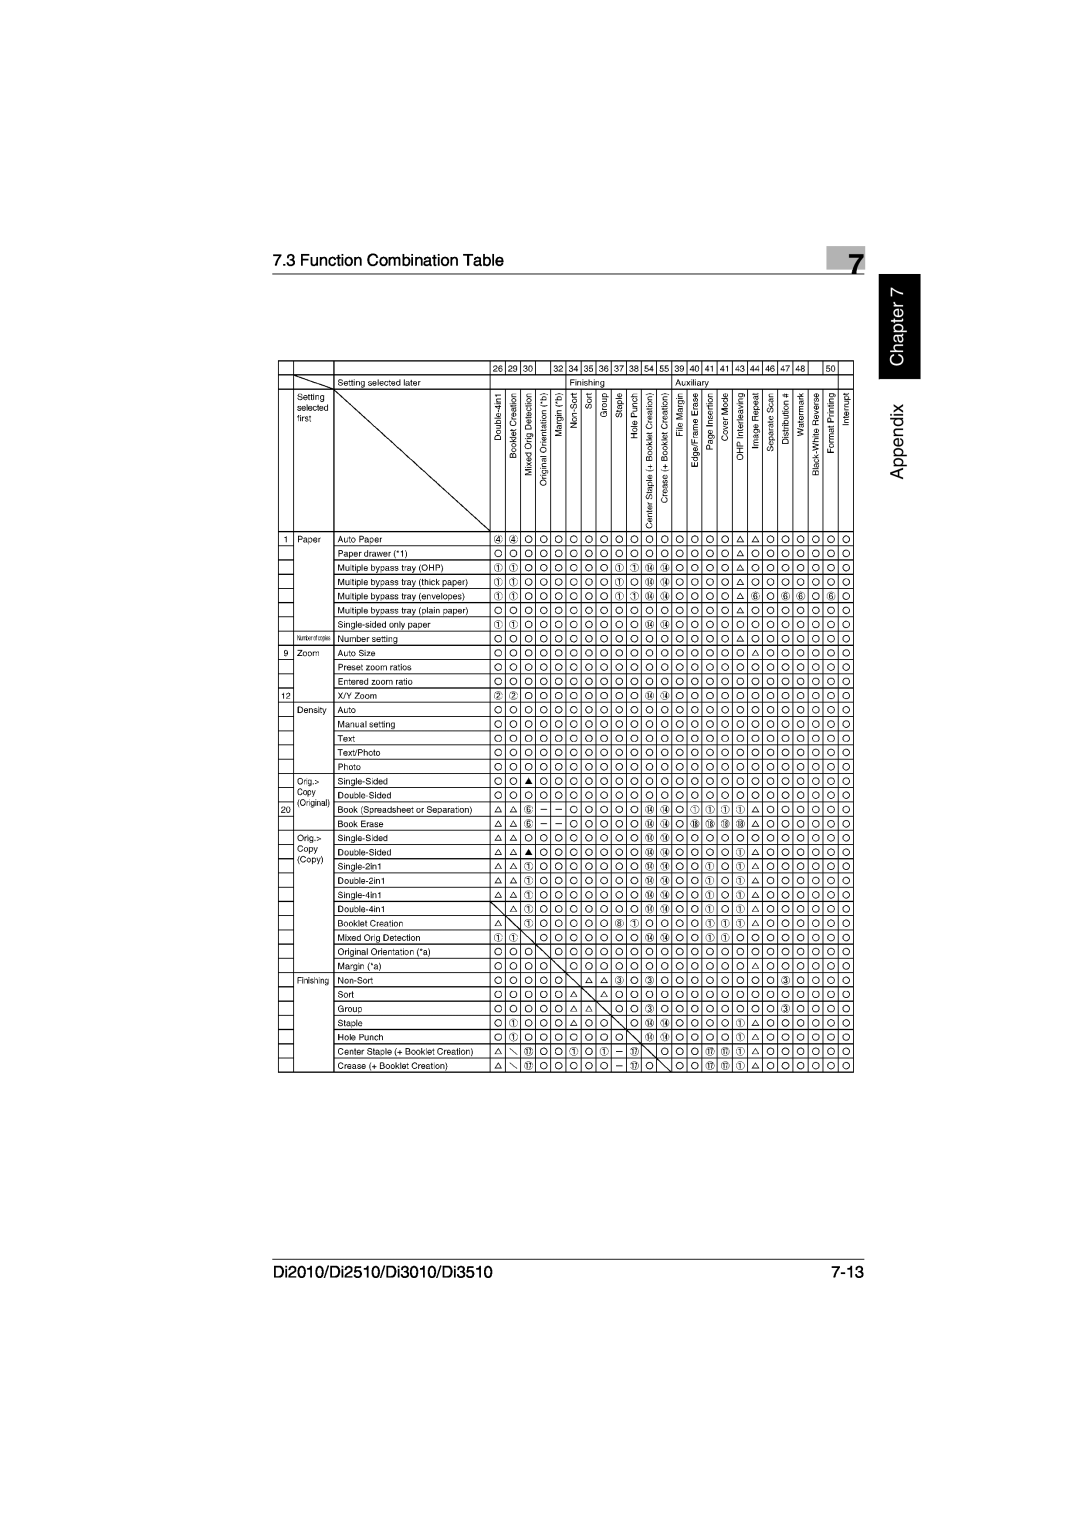 Minolta DI3010, DI2510, DI2010 user manual Appendix Chapter, Function Combination Table, Di2010/Di2510/Di3010/Di3510, 7-13 